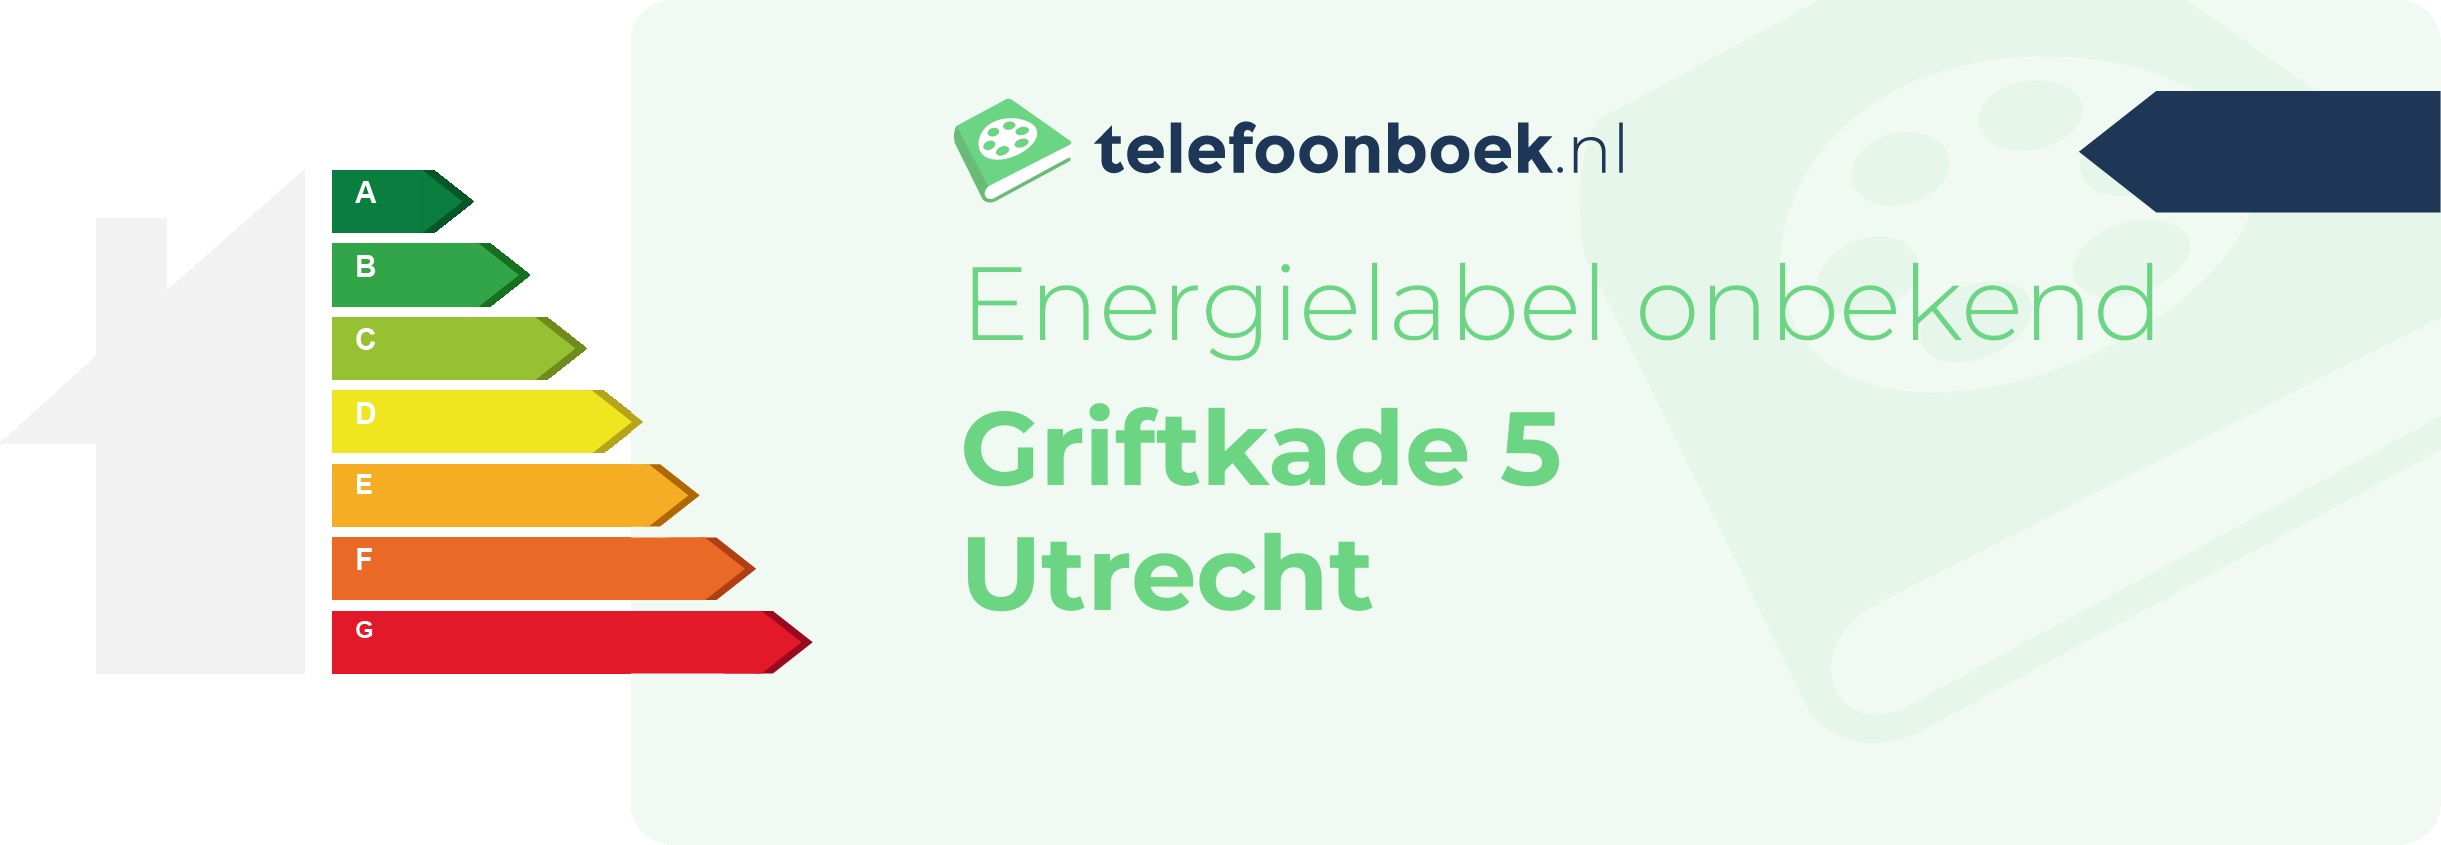 Energielabel Griftkade 5 Utrecht